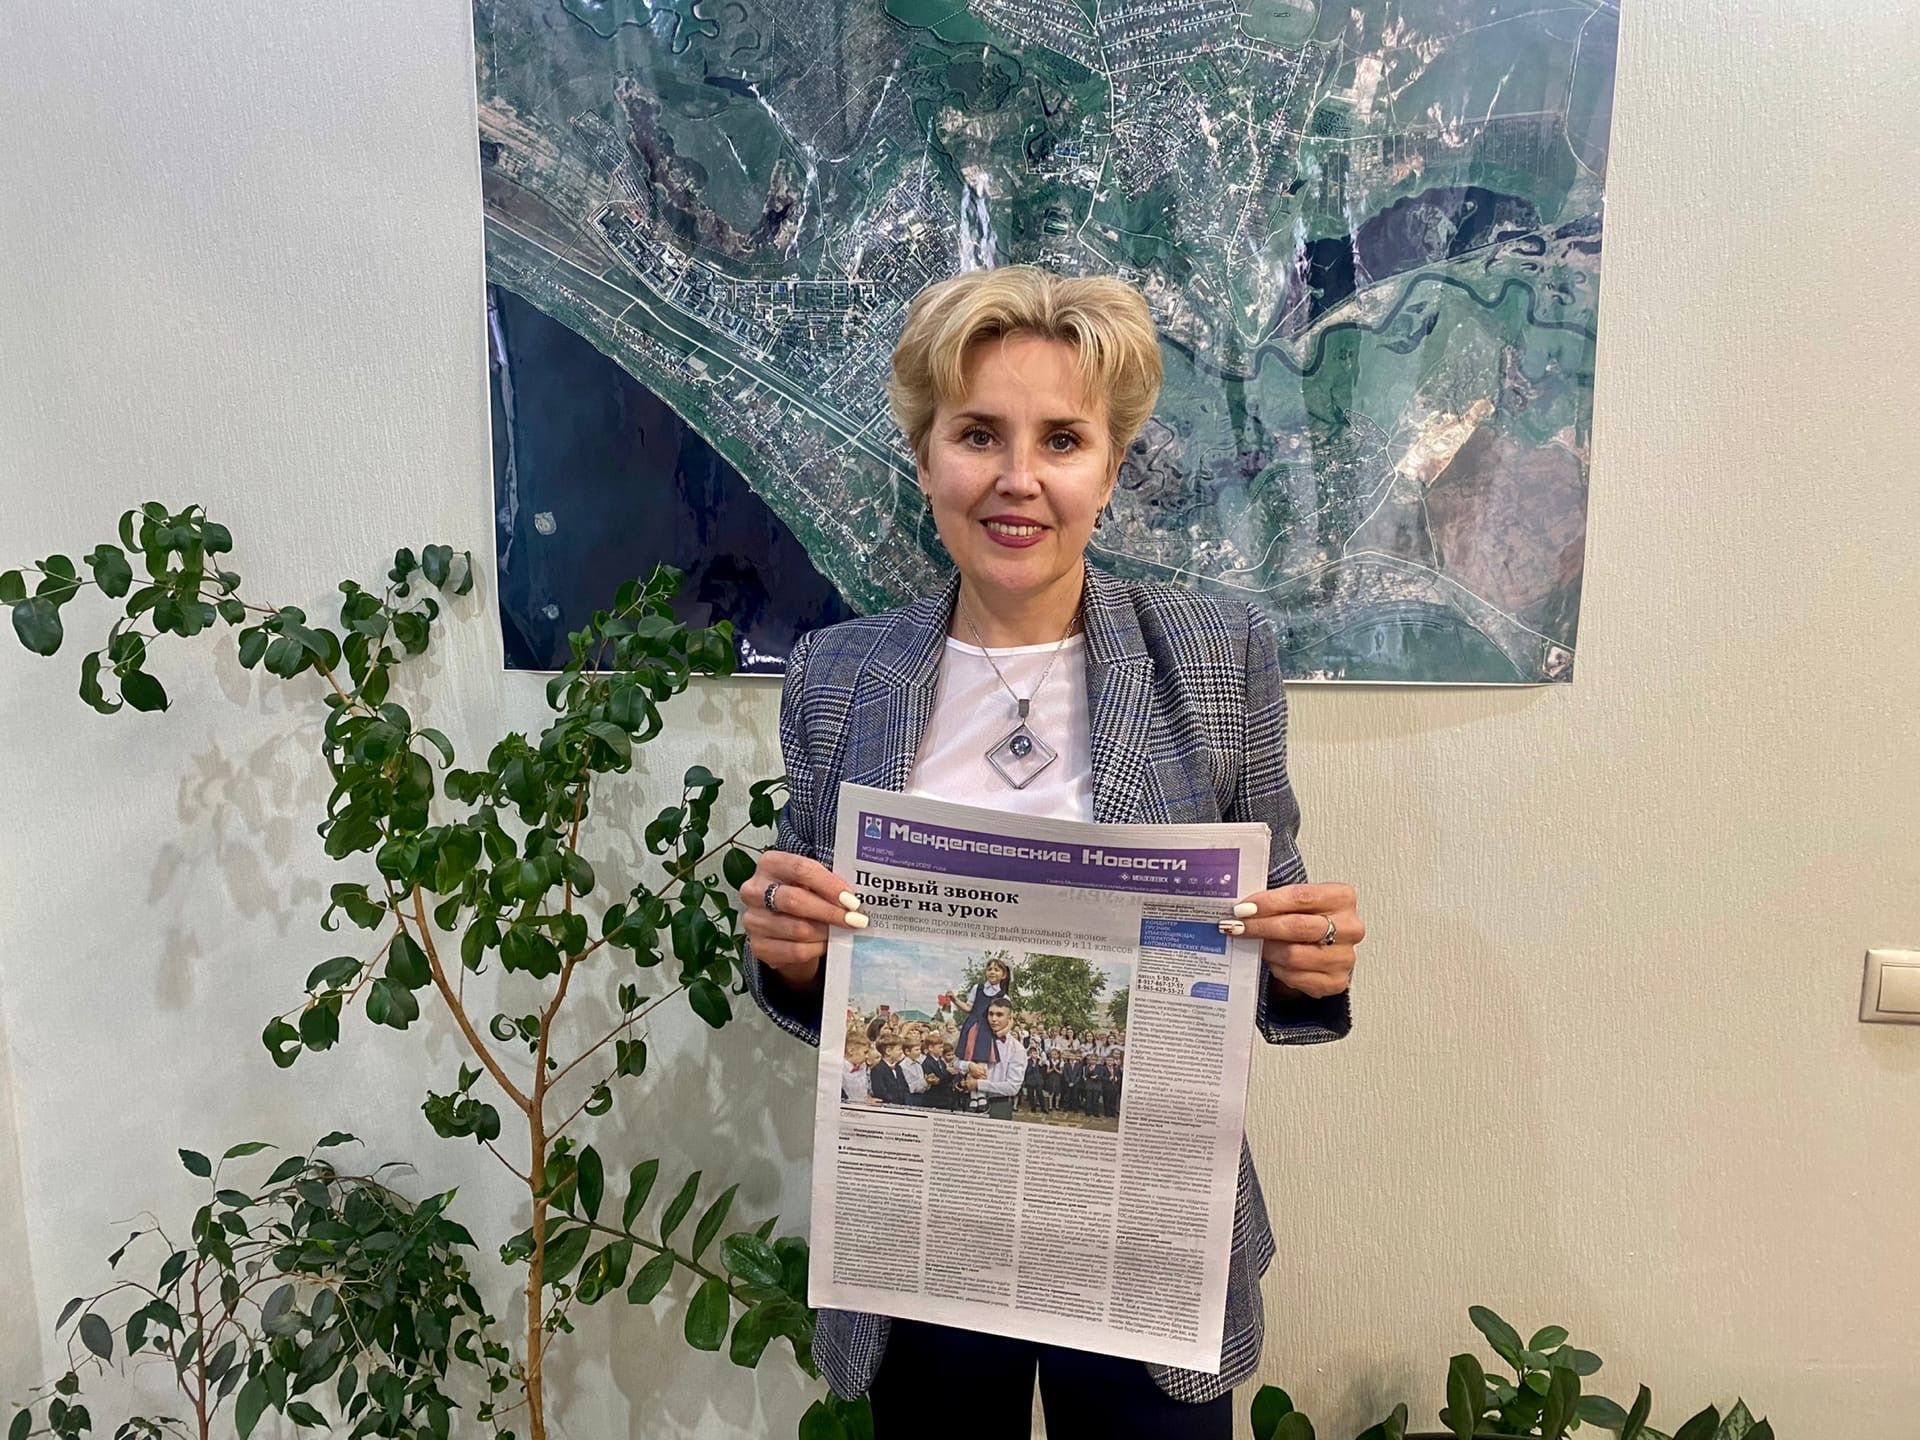 Заместитель главы Лейсан Галеева присоединилась к подписной кампании и выписала газету «Менделеевские новости»